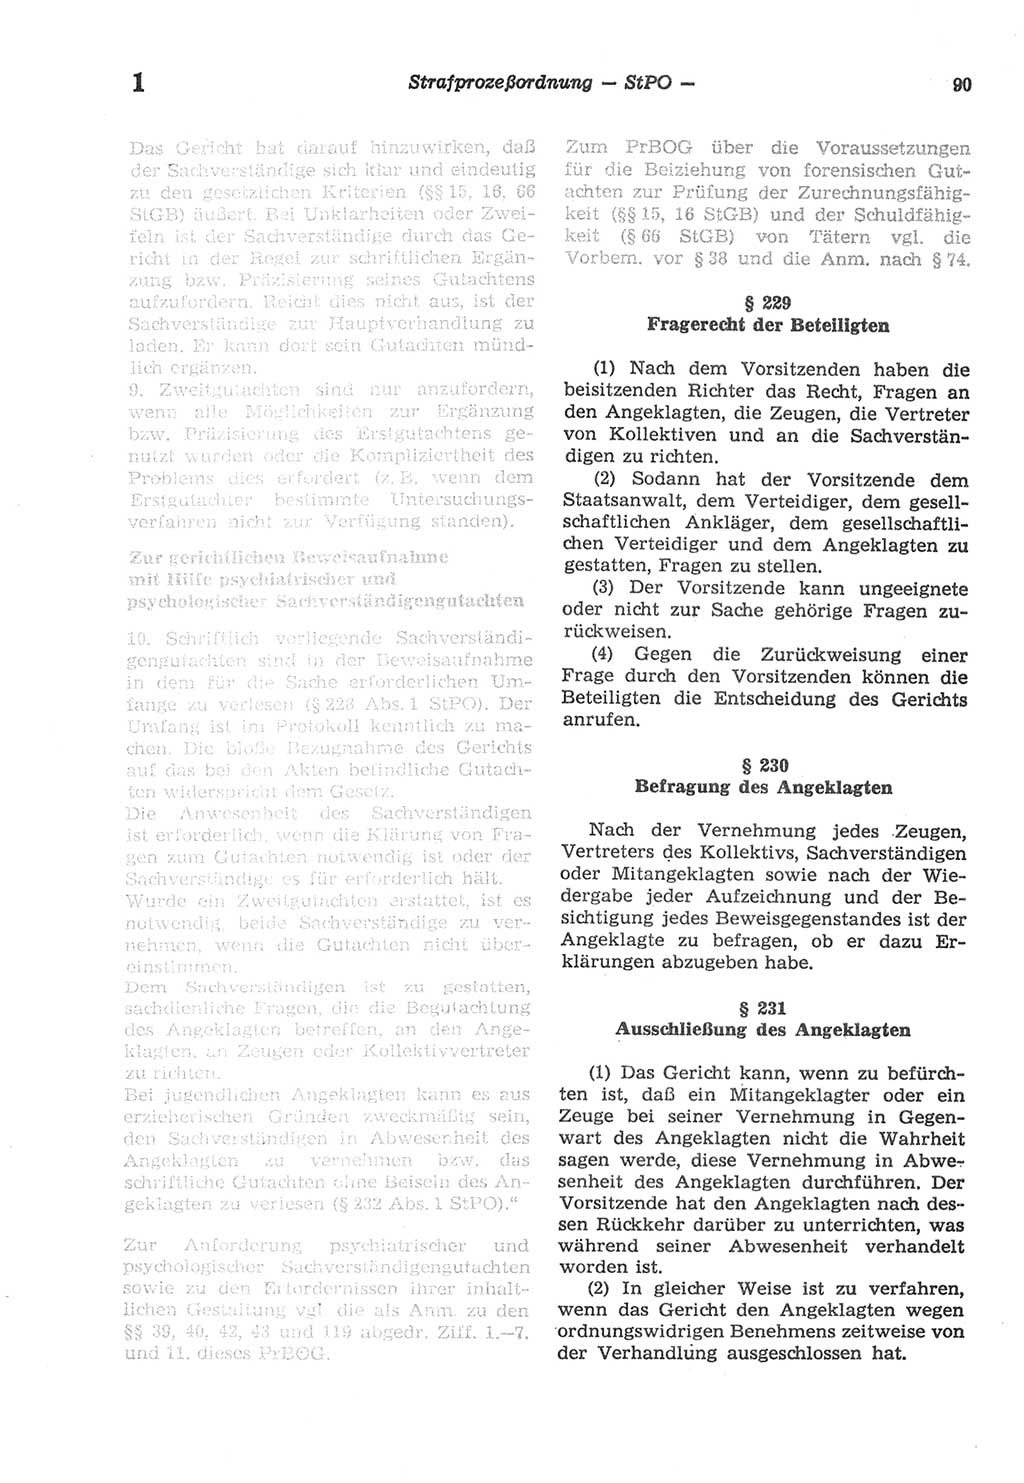 Strafprozeßordnung (StPO) der Deutschen Demokratischen Republik (DDR) sowie angrenzende Gesetze und Bestimmungen 1977, Seite 90 (StPO DDR Ges. Best. 1977, S. 90)